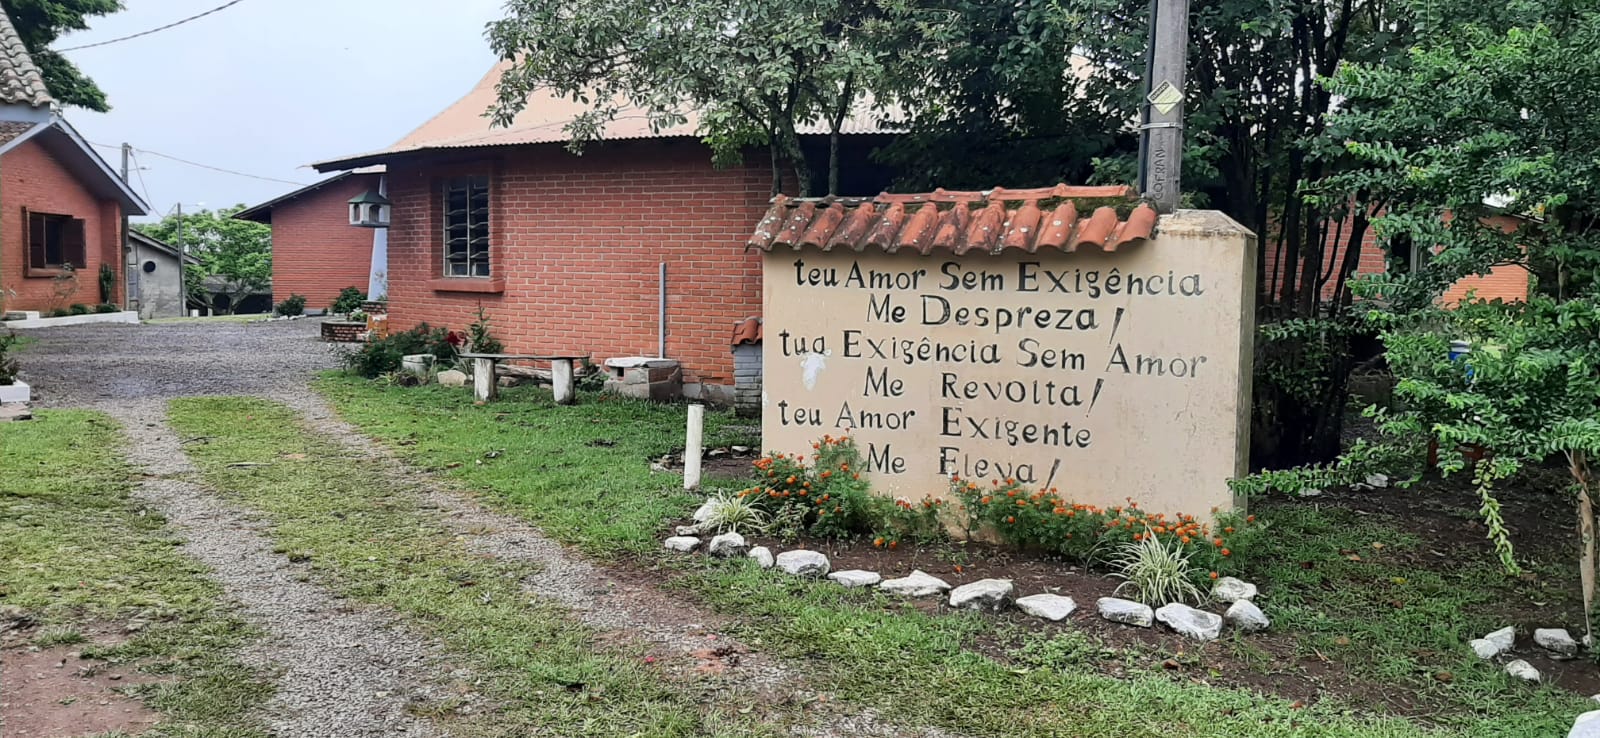 Copiosa Redenção assume Comunidade Terapêutica no Rio Grande do Sul